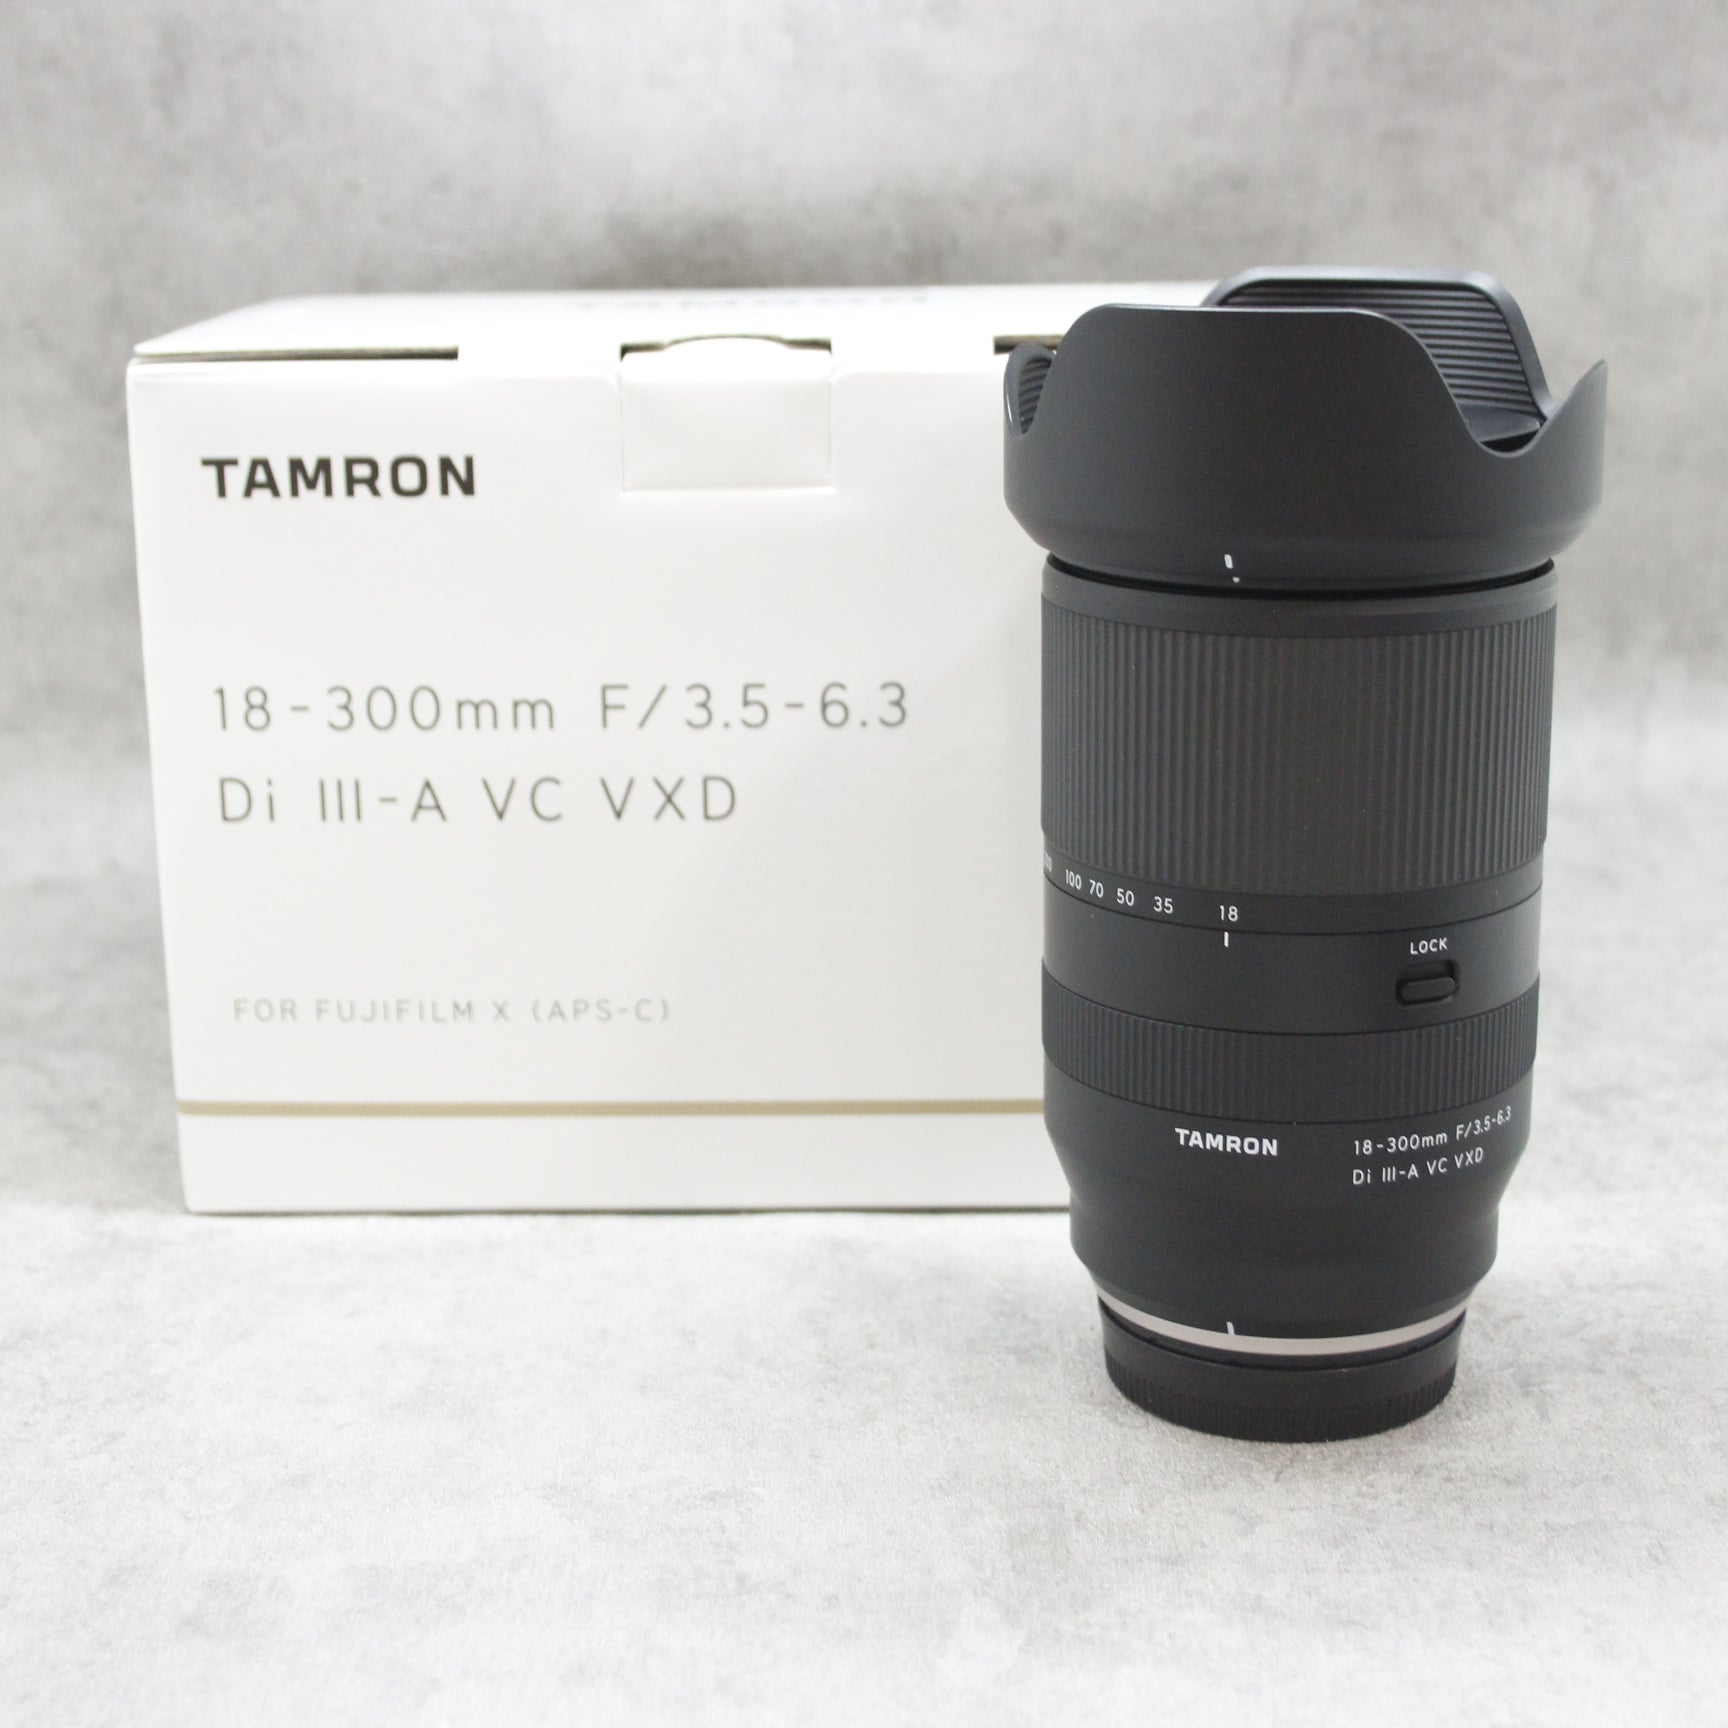 中古品 TAMRON 18-300mm F/3.5-6.3 Di III-A VC VXD (Model B061) X